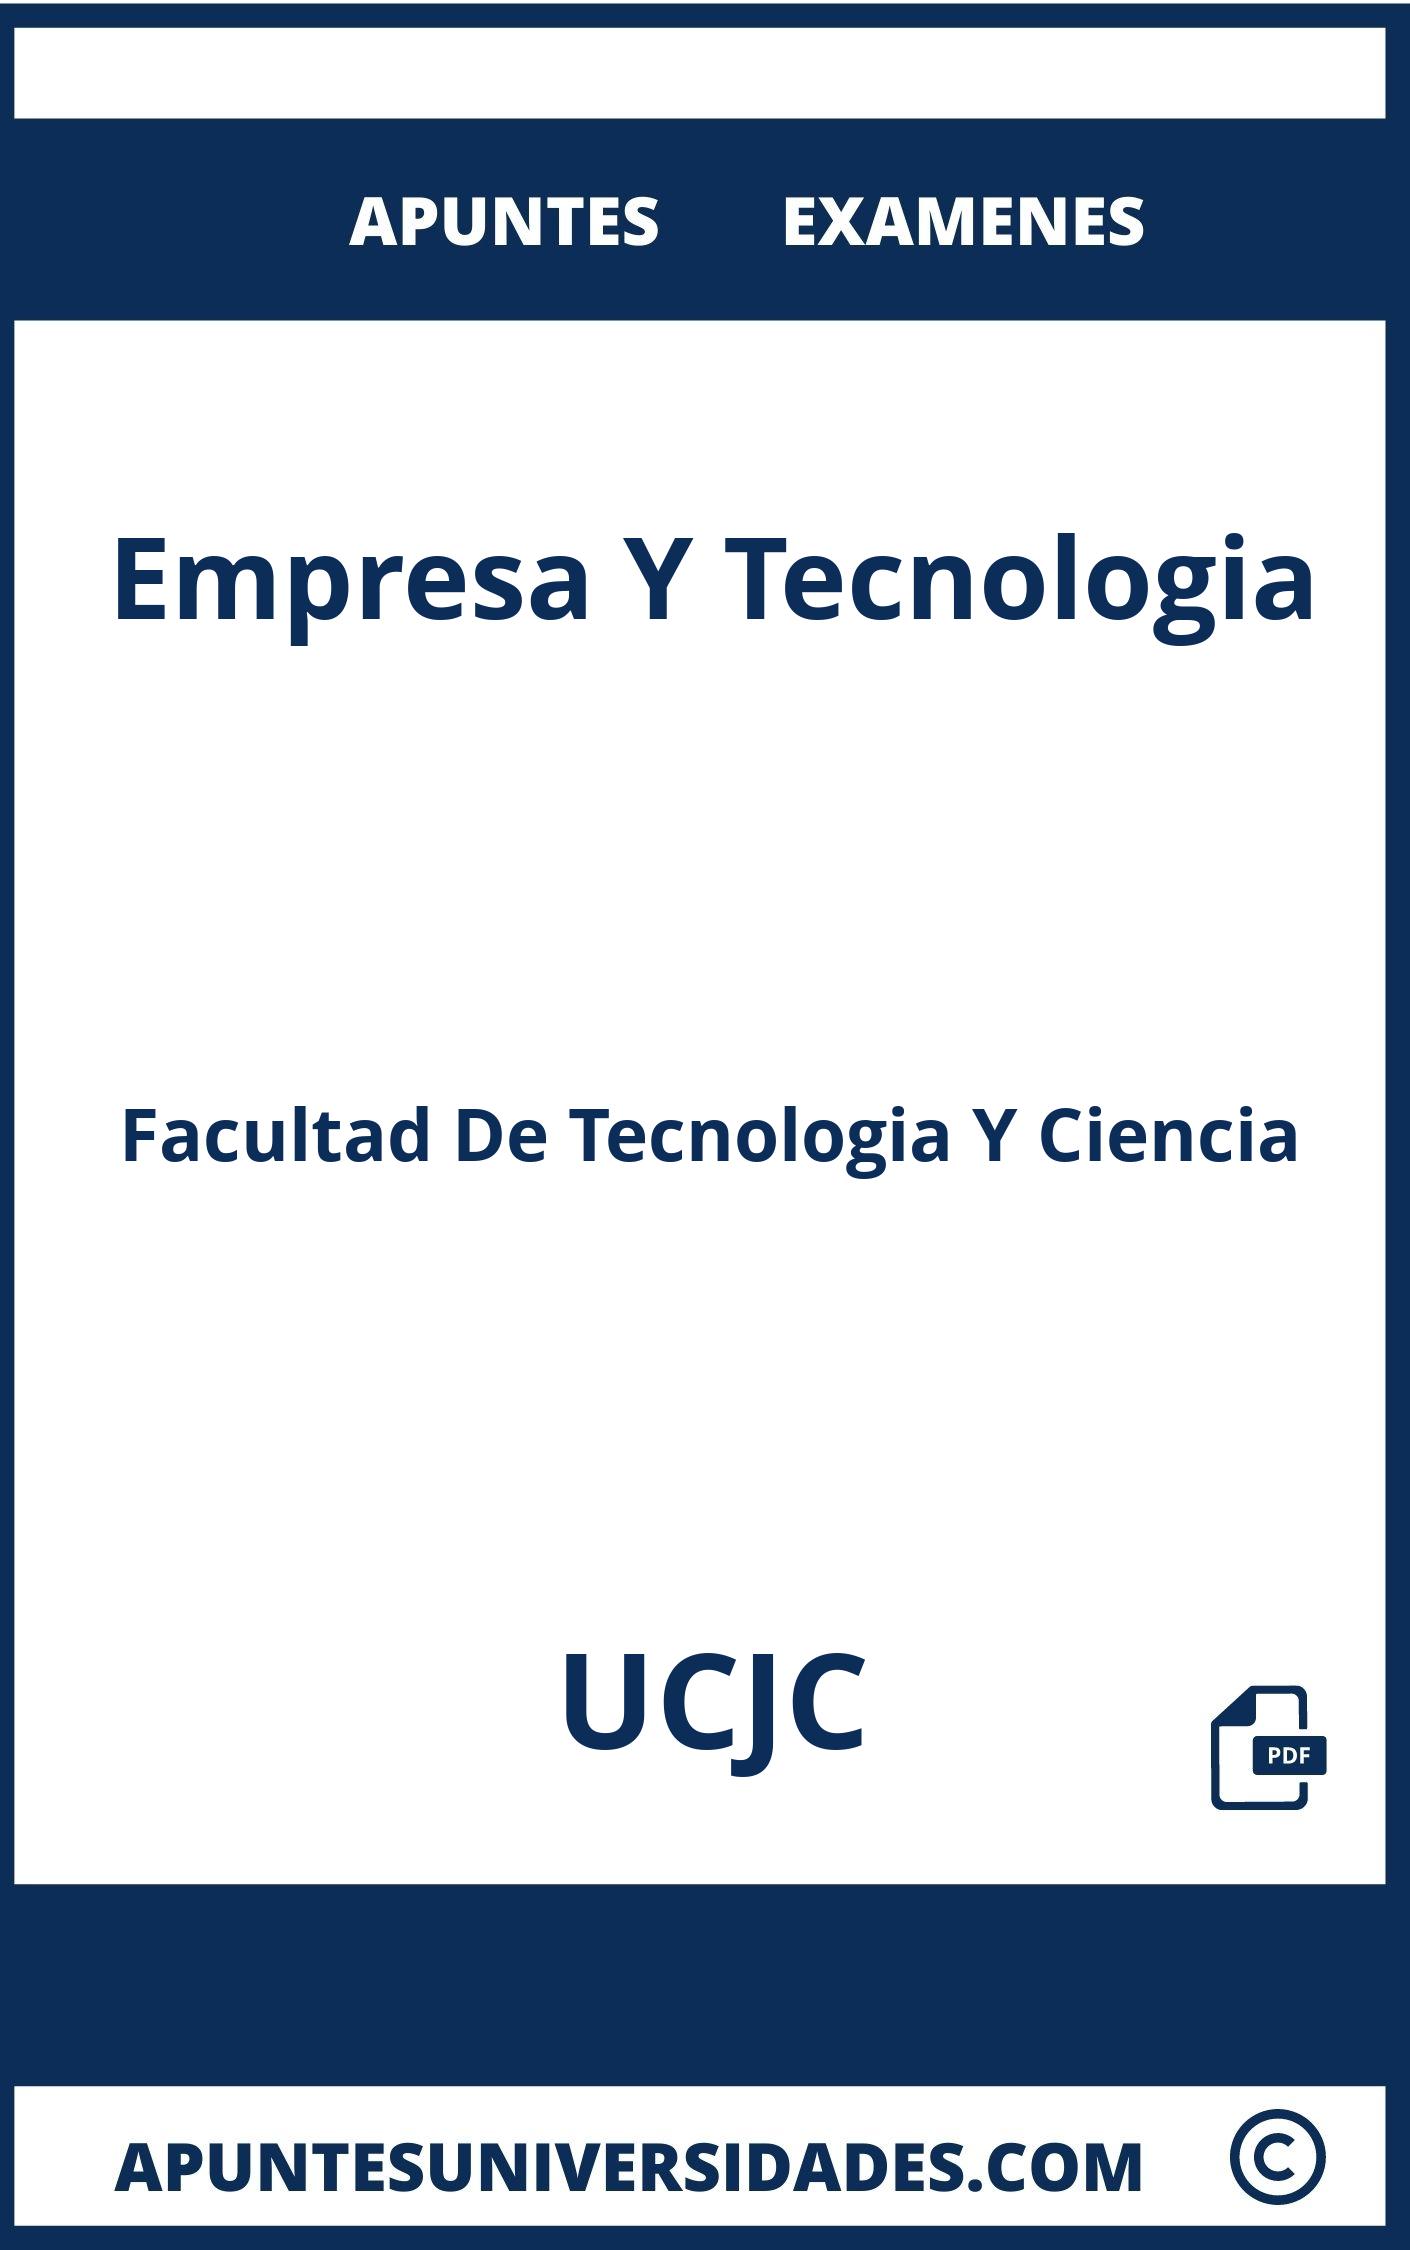 Examenes y Apuntes Empresa Y Tecnologia UCJC